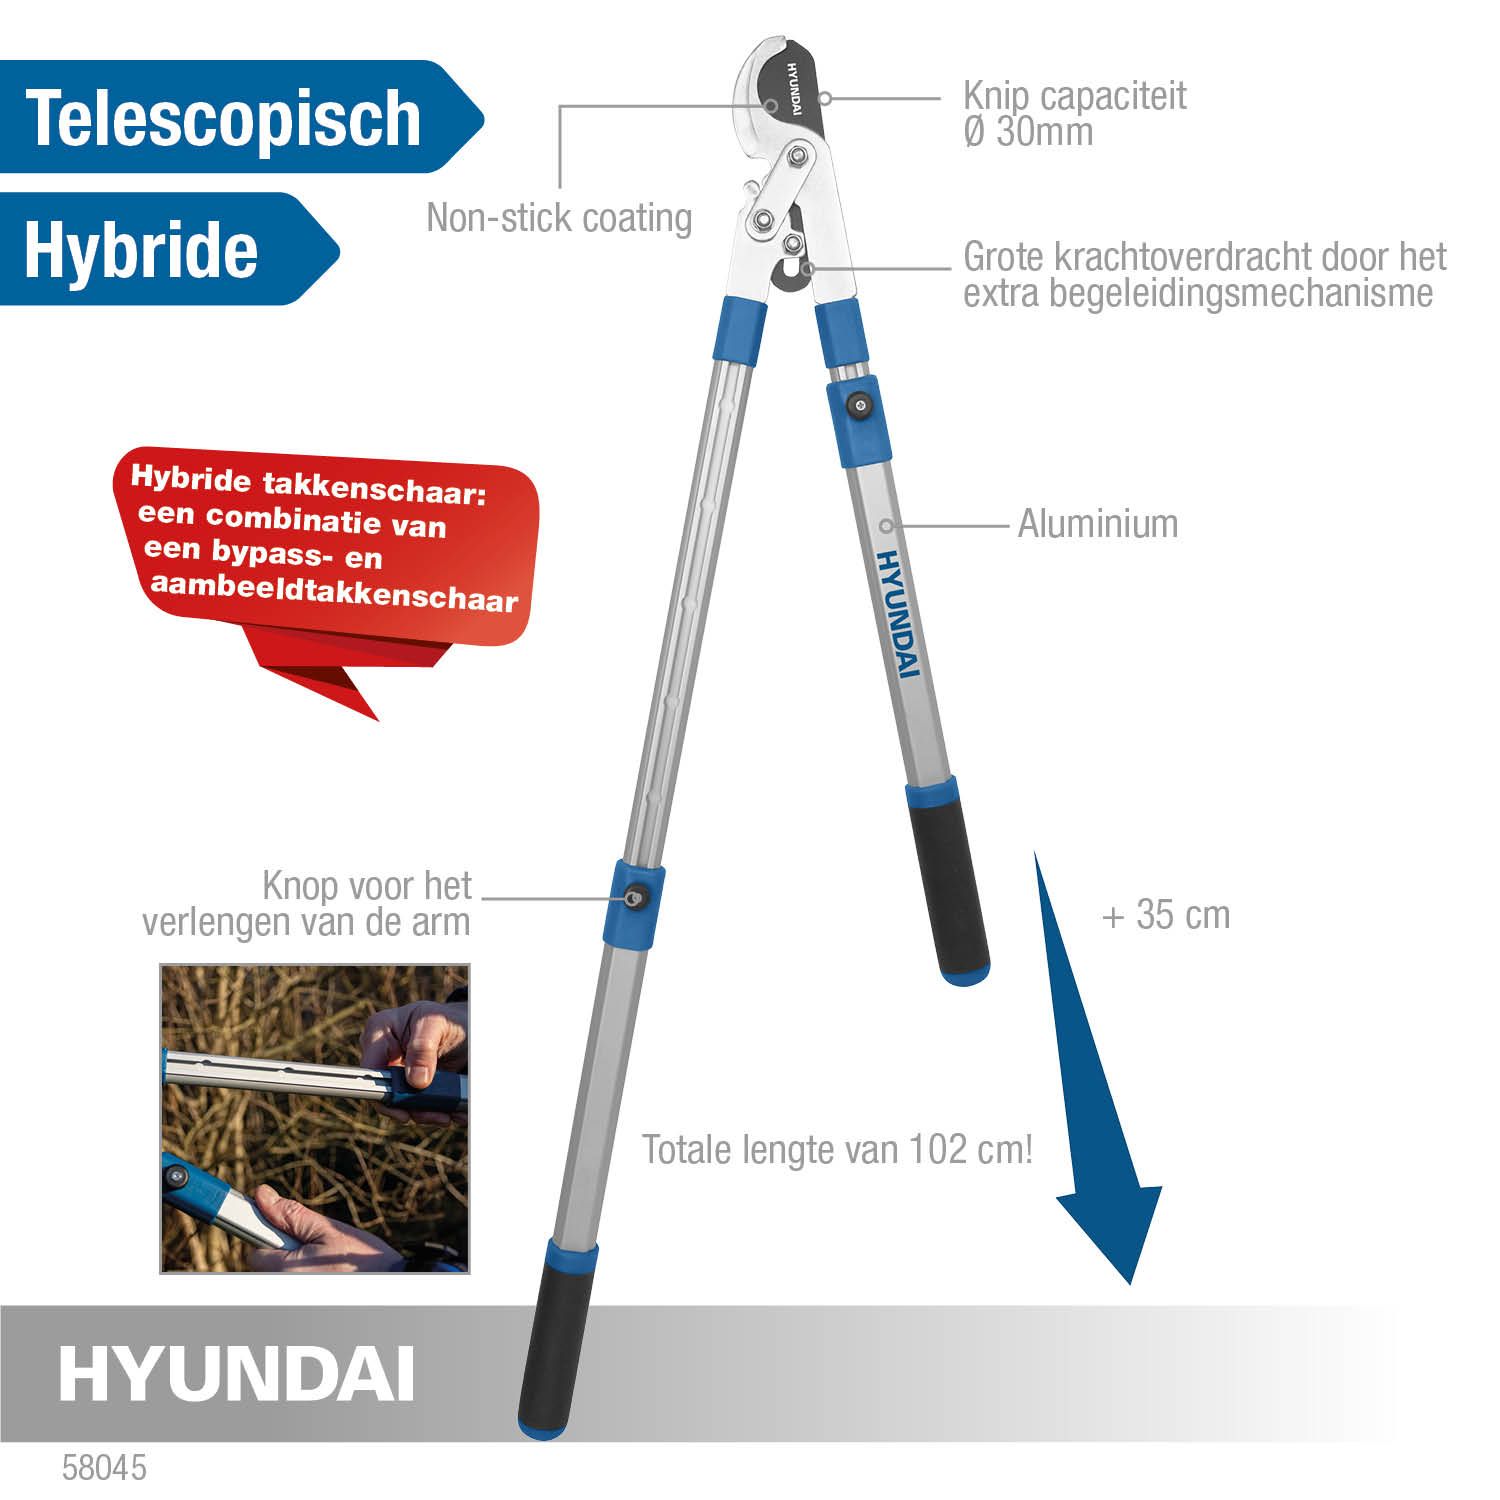 Hyundai takkenschaar telescopisch